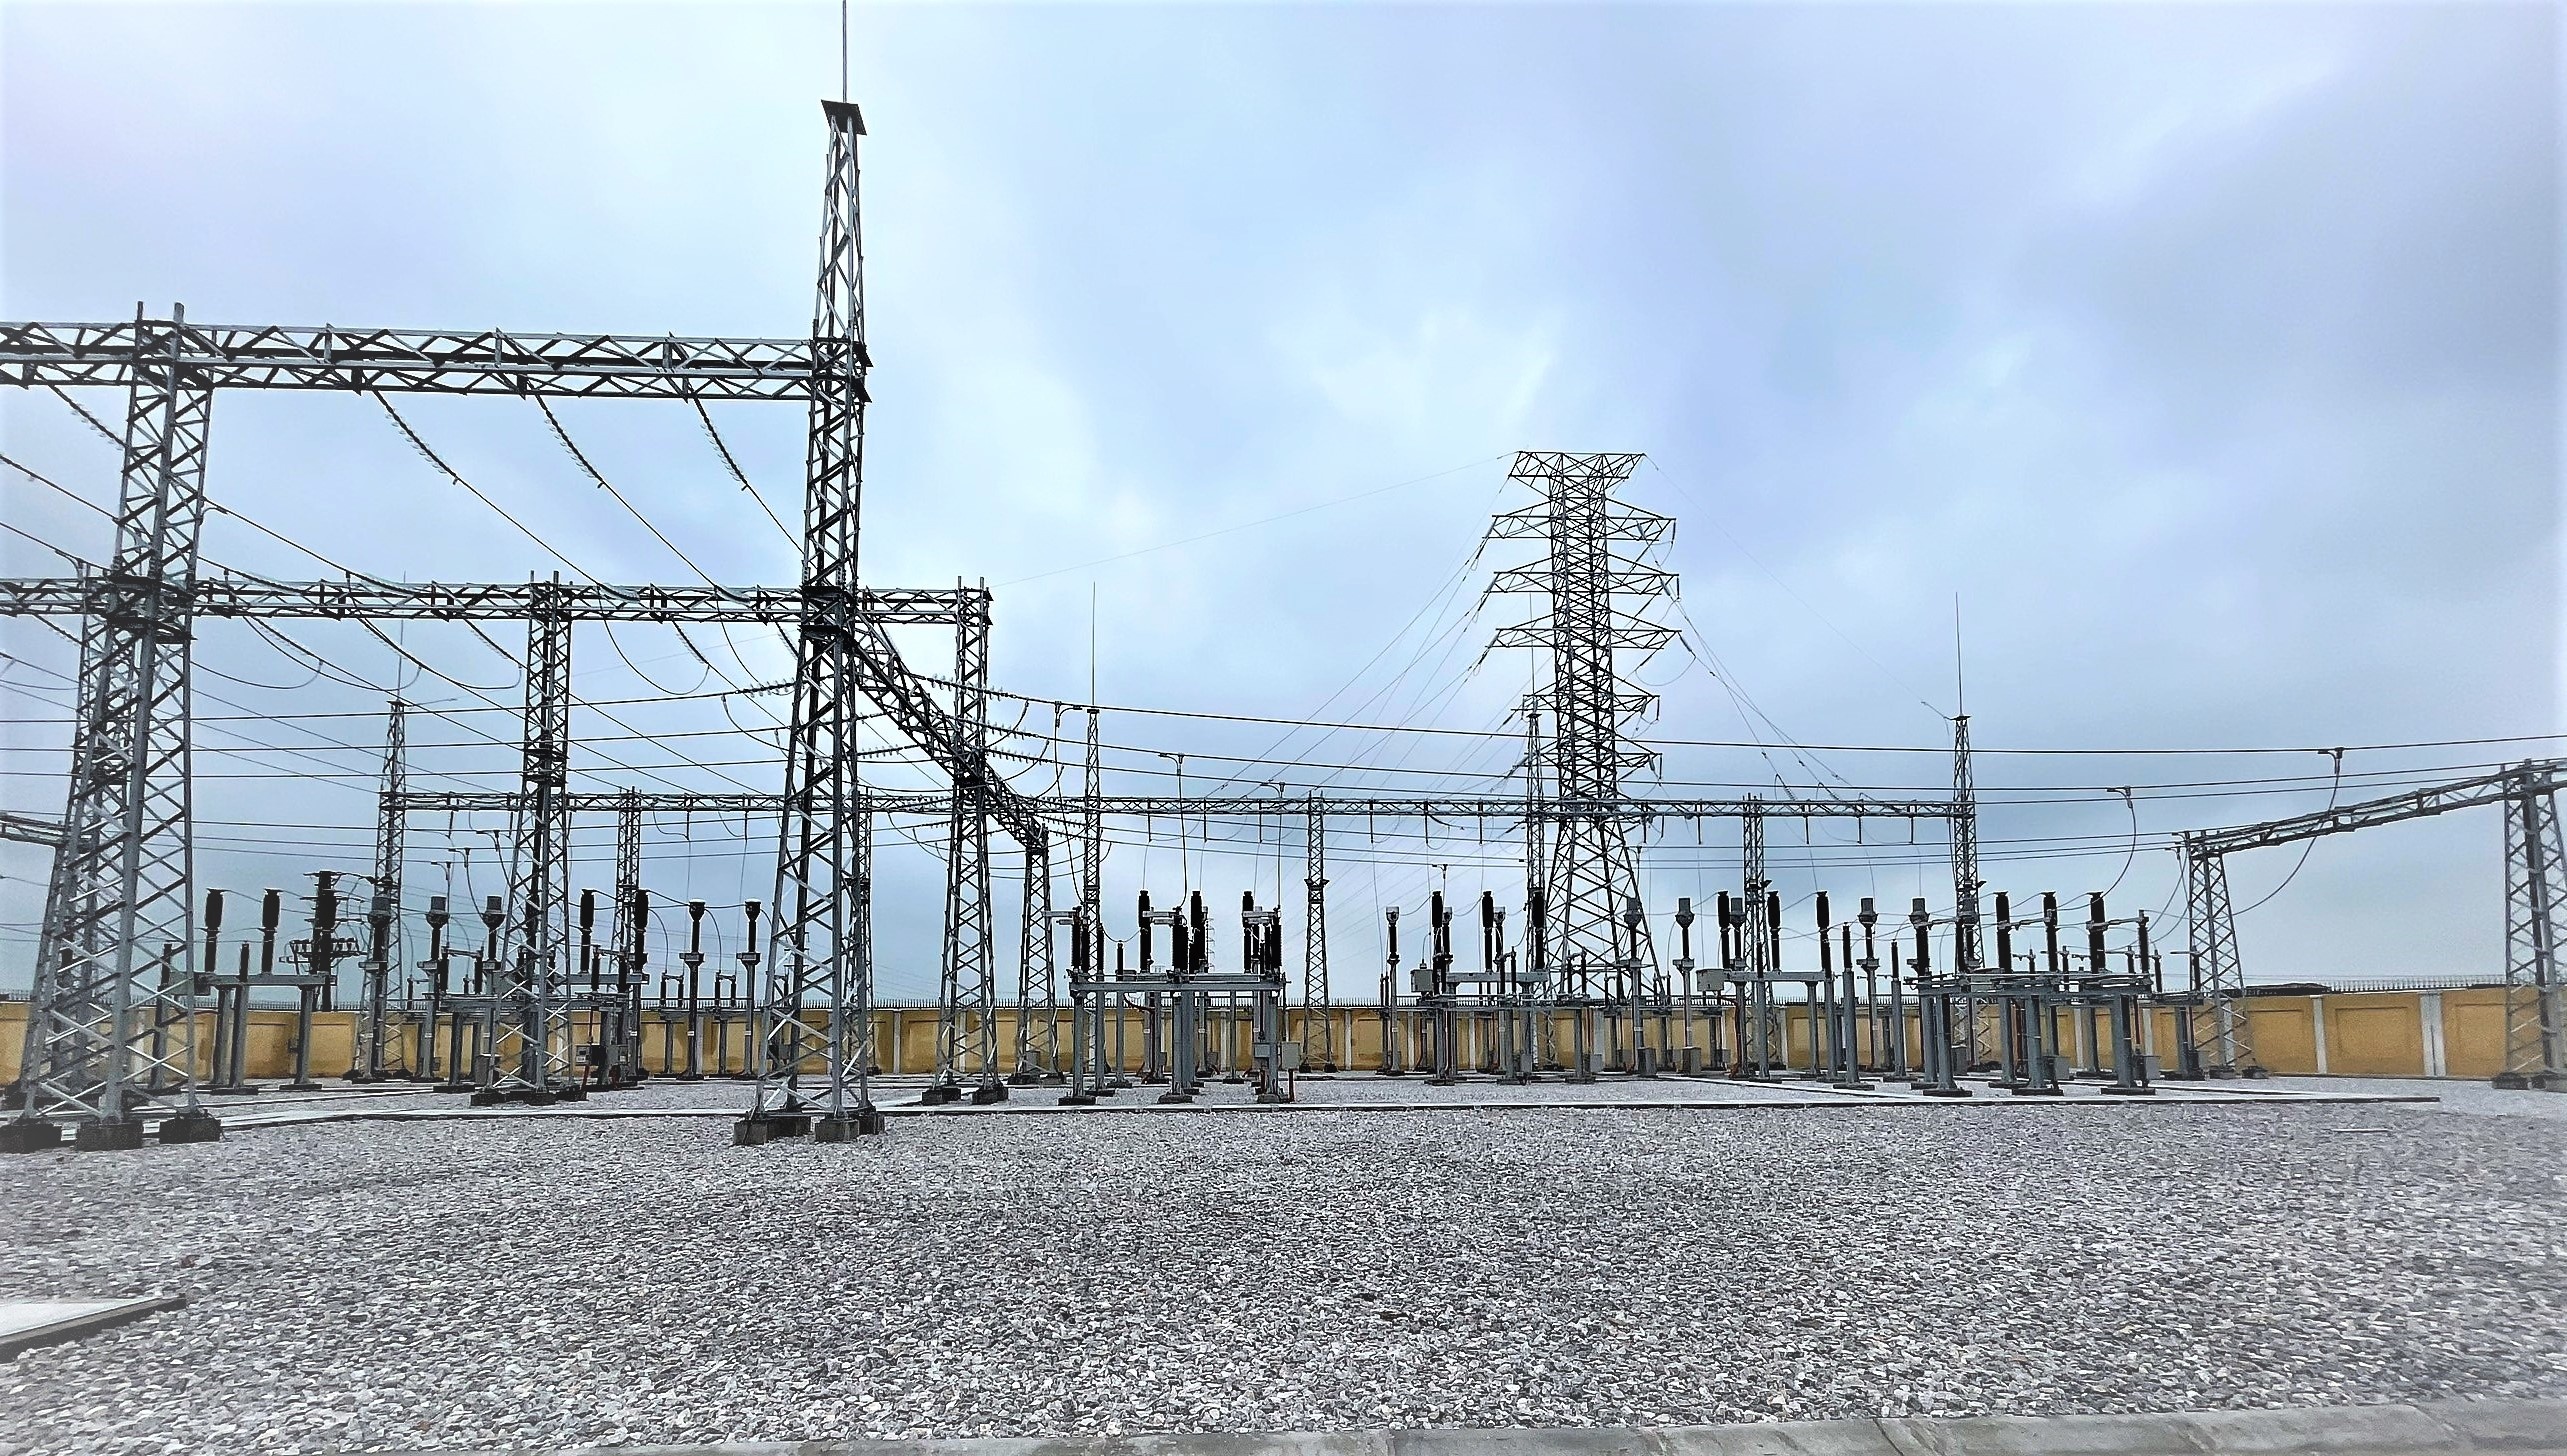 Đóng điện TBA Kỹ thuật số 110kV Nghi Sơn TBA kỹ thuật số hoàn chỉnh đầu tiên trên lưới điện 110kV